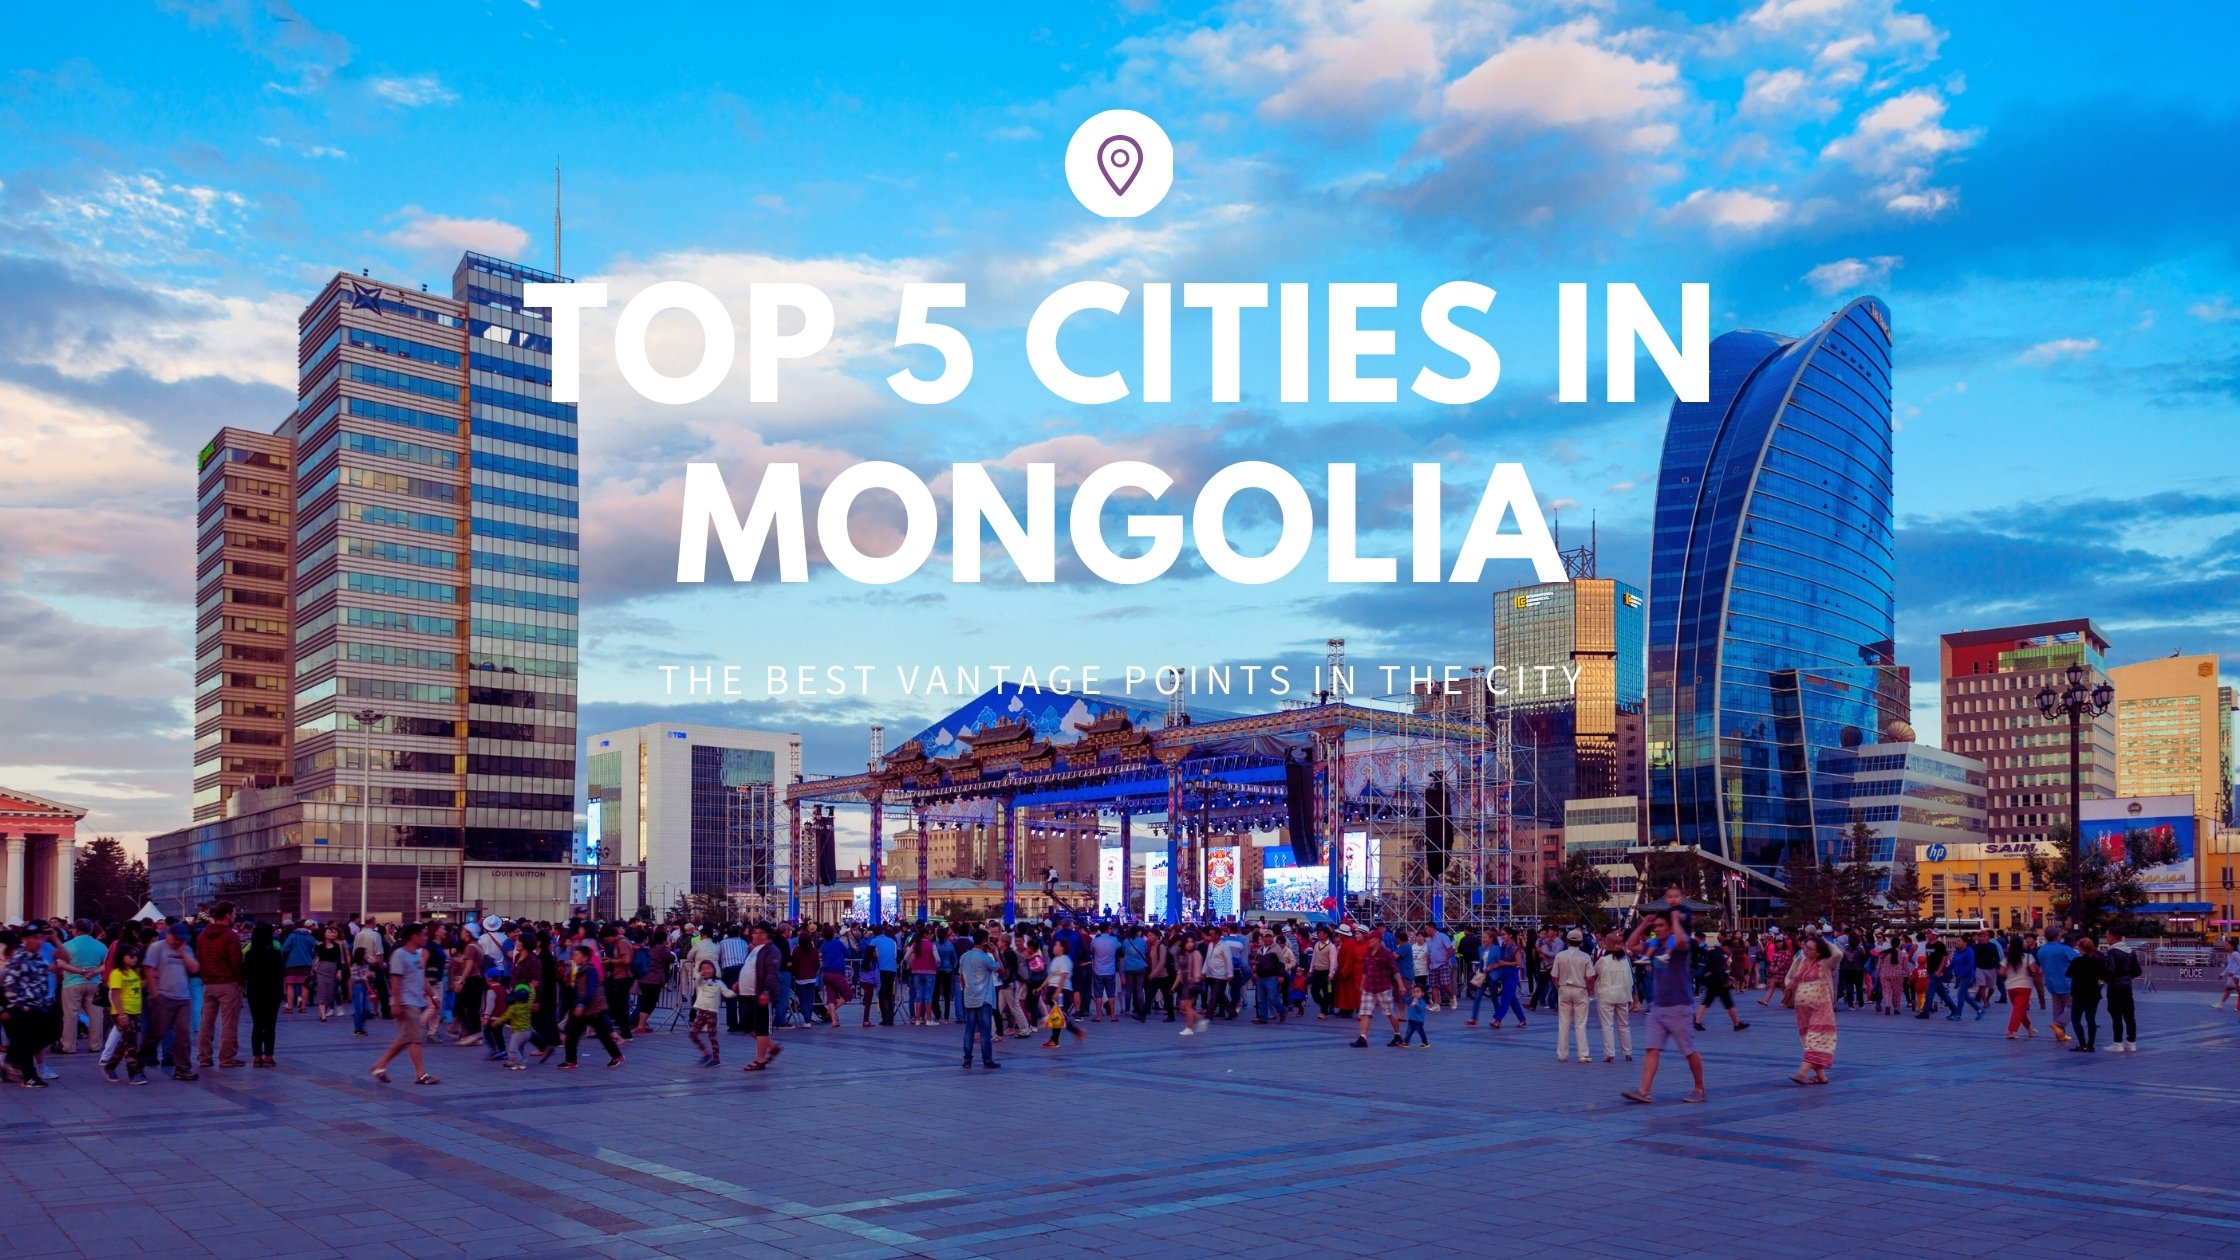 Mongolian cities